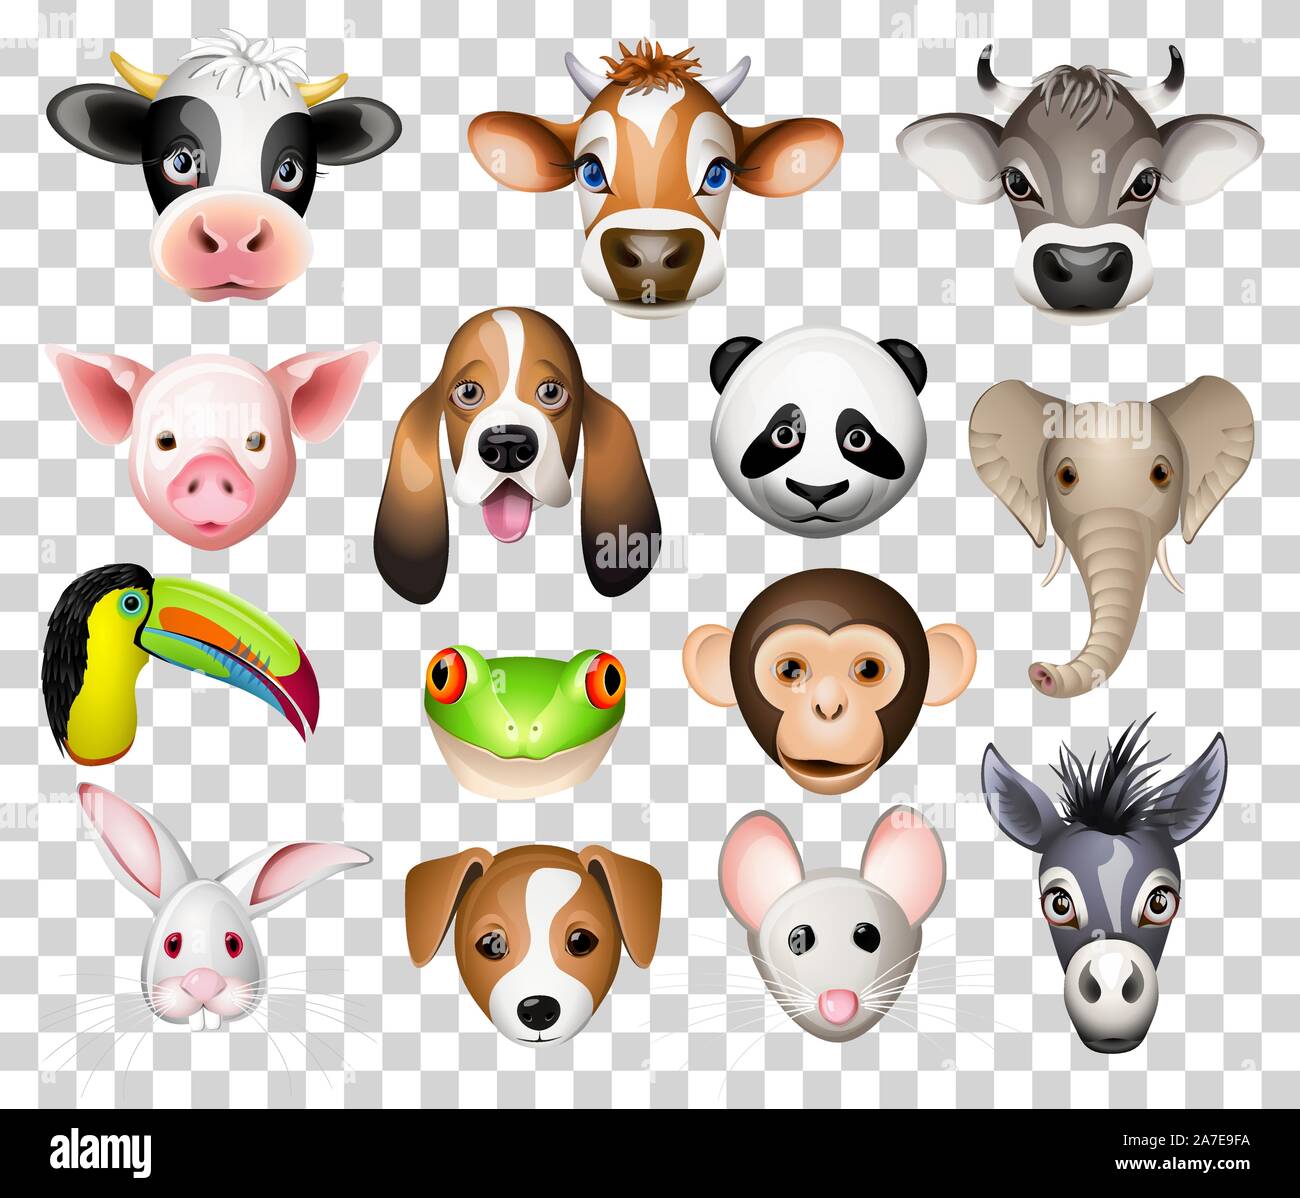 Ensemble d'illustration cartoon animaux avec vache, cochon, chien basset, panda, éléphant, toucan, grenouille, âne, lapin, souris et de l'âne Illustration de Vecteur